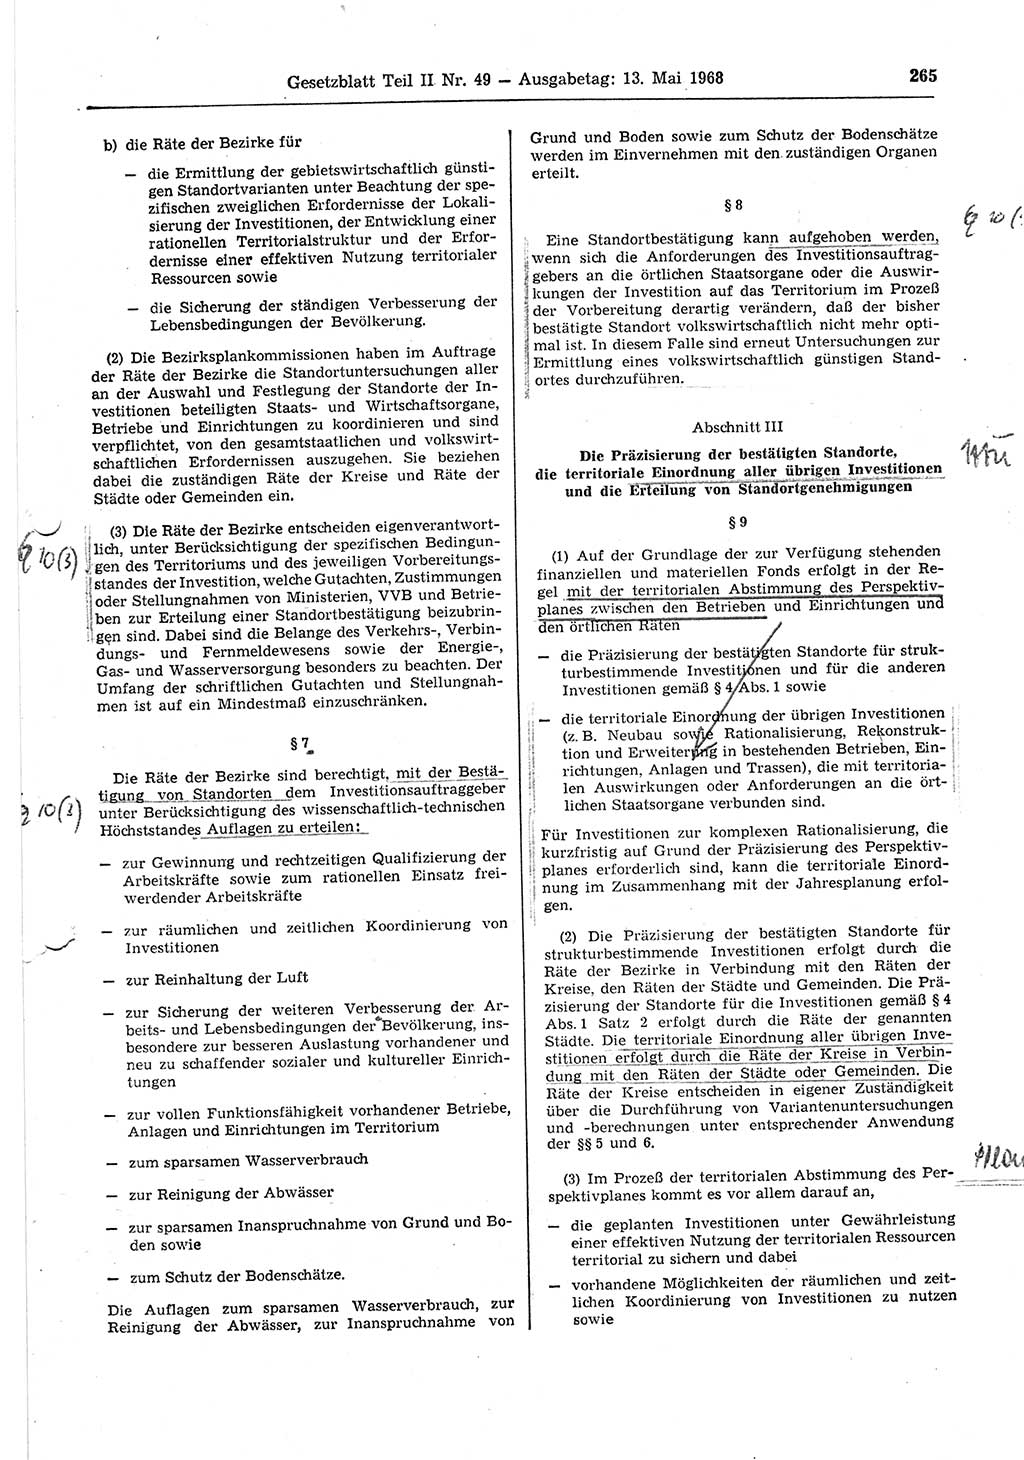 Gesetzblatt (GBl.) der Deutschen Demokratischen Republik (DDR) Teil ⅠⅠ 1968, Seite 265 (GBl. DDR ⅠⅠ 1968, S. 265)